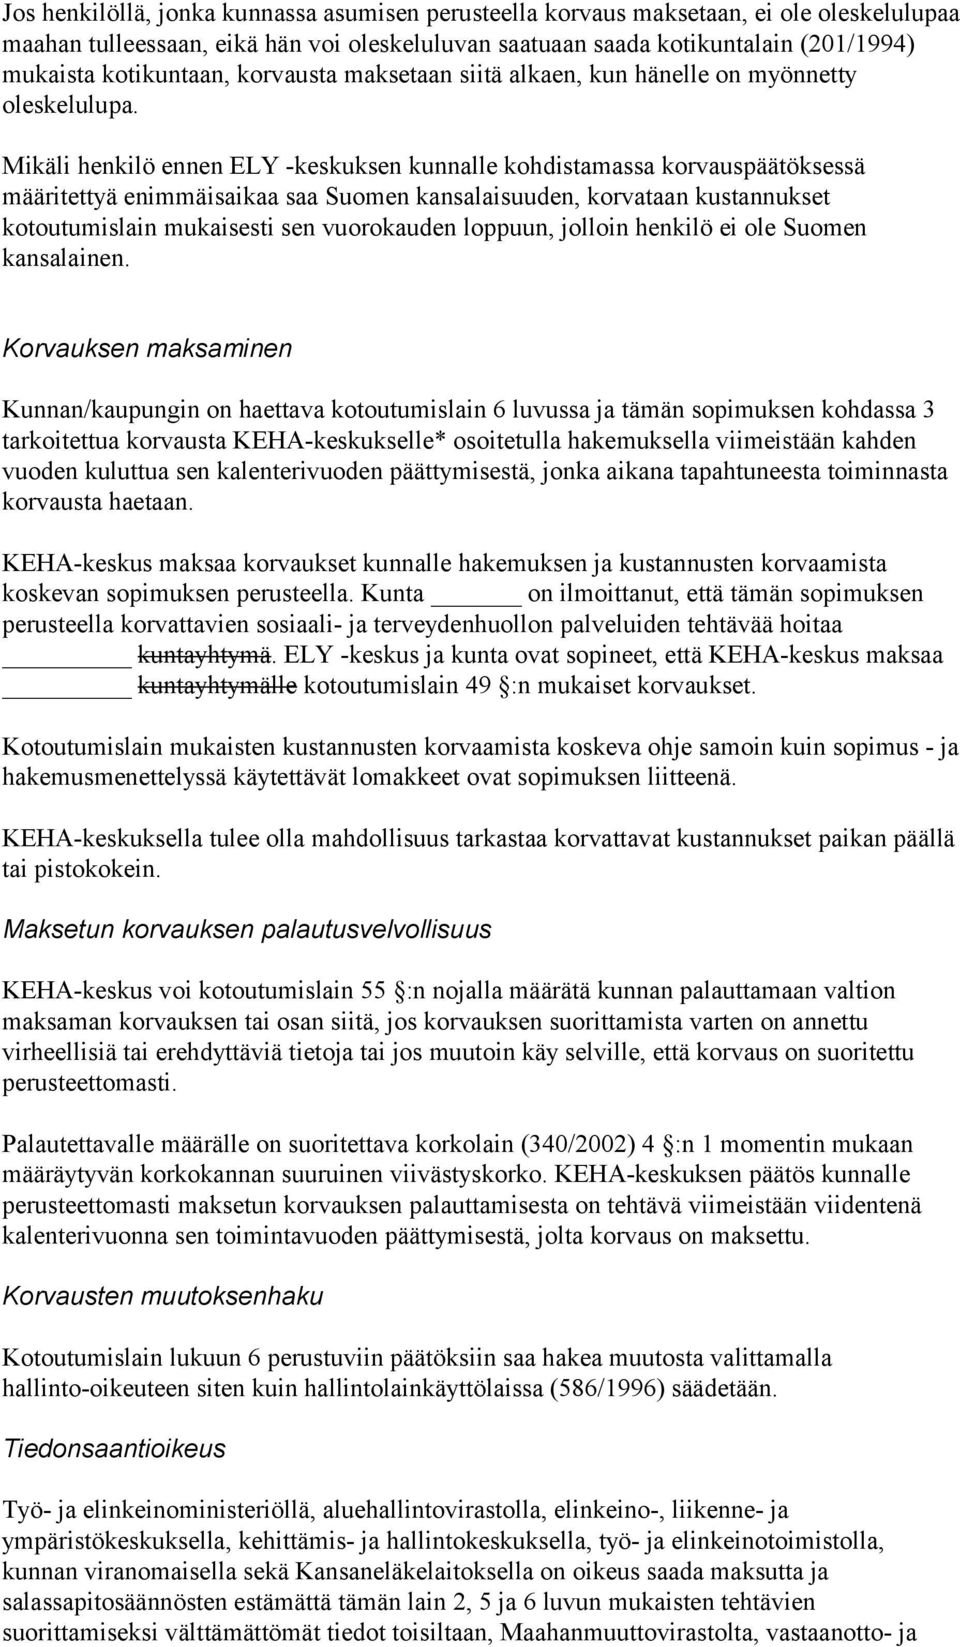 Mikäli henkilö ennen ELY -keskuksen kunnalle kohdistamassa korvauspäätöksessä määritettyä enimmäisaikaa saa Suomen kansalaisuuden, korvataan kustannukset kotoutumislain mukaisesti sen vuorokauden